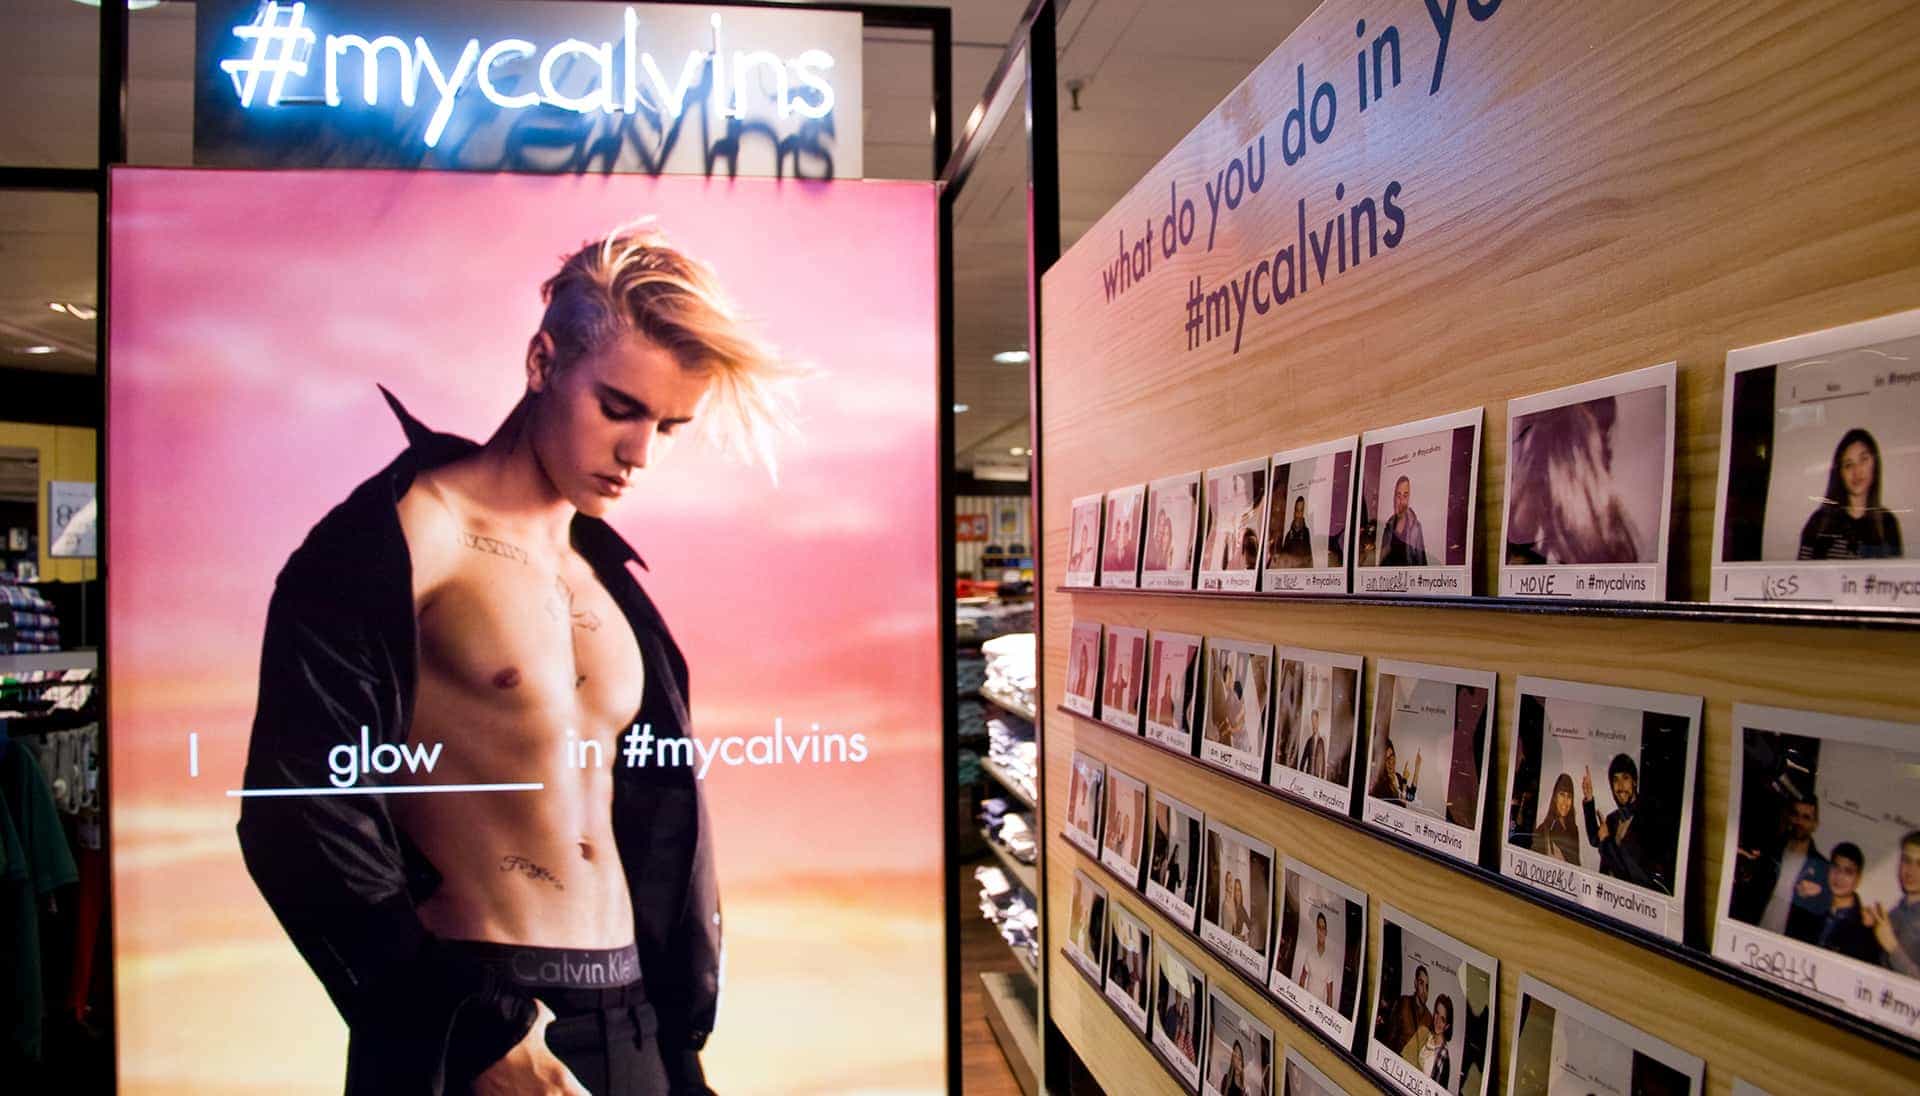 “I ______ in #MyCalvins” con Justin Bieber, James Rodriguez y Kendall Jenner entre otros